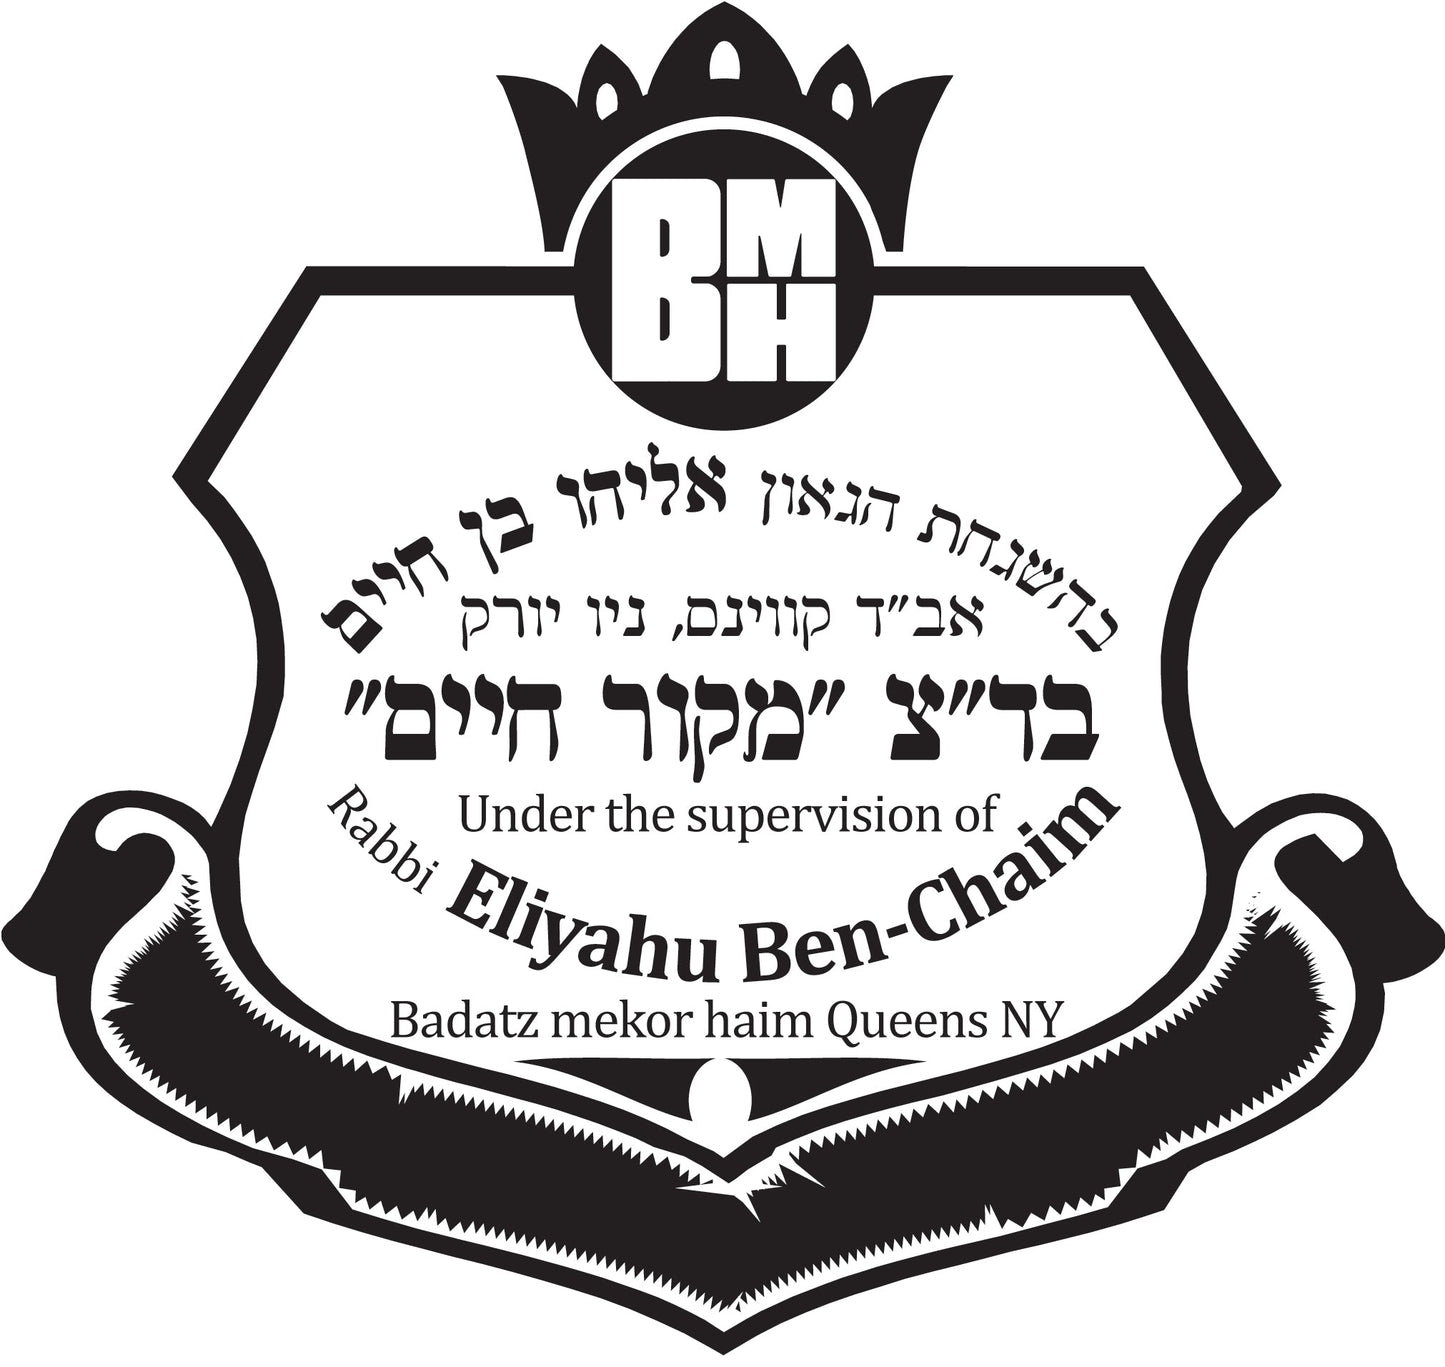 BMH Logo